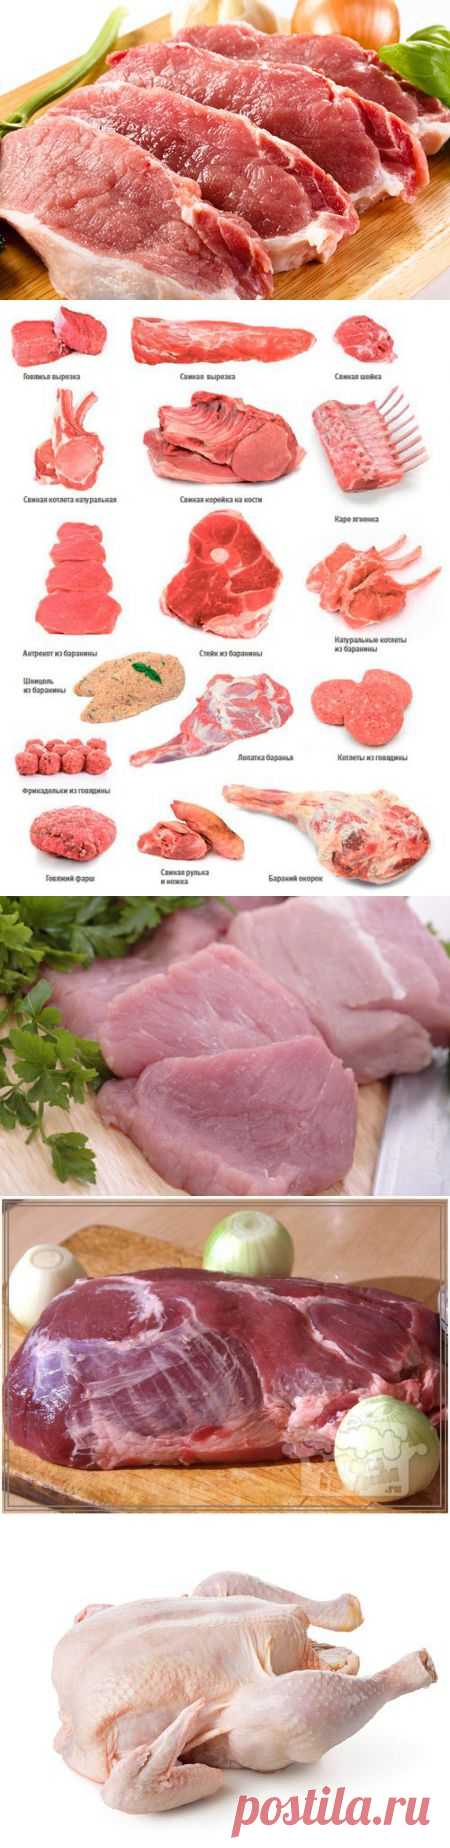 (+1) - Какое мясо выбрать для шашлыка: 8 правил для рынка и магазина | ПОТРЕБИТЕЛЬ, БДИ